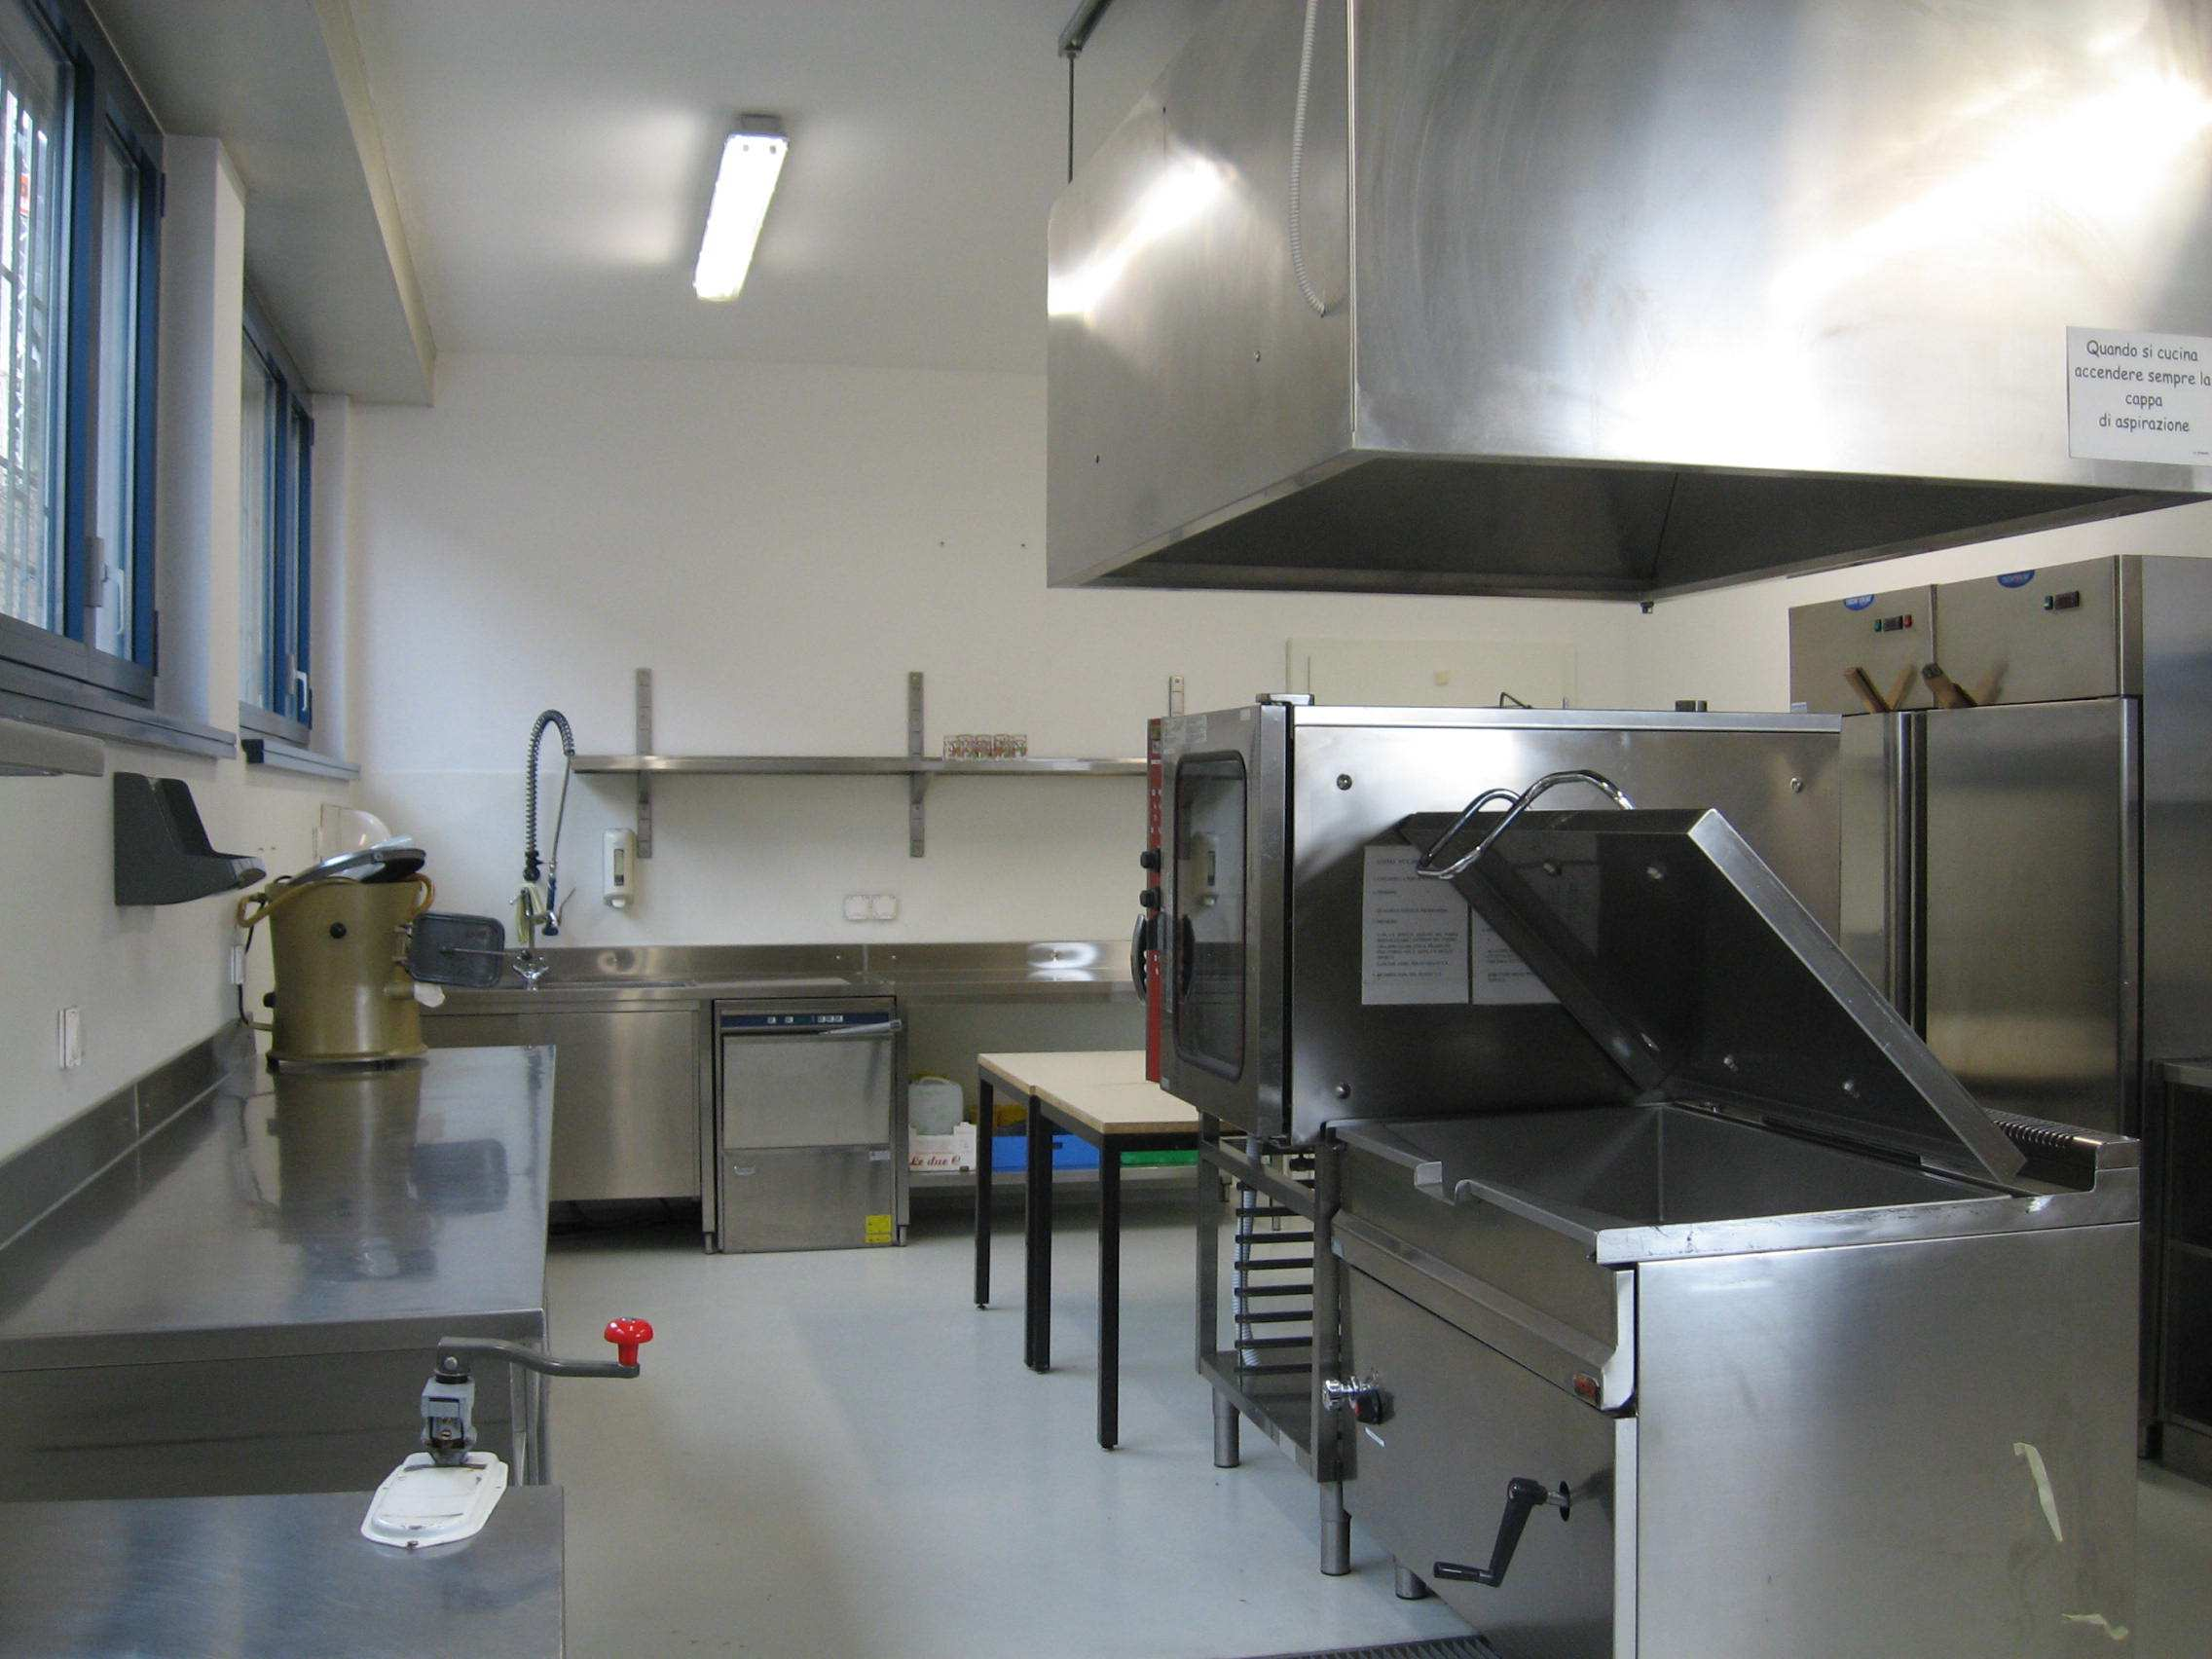 Nel 2012 la cucina esistente nella Scuola elementare (SE) è stata ammodernata nell ambito di una collaborazione avvenuta con il Centro per la formazione professionale e sociale di Gerra Piano (CPS).